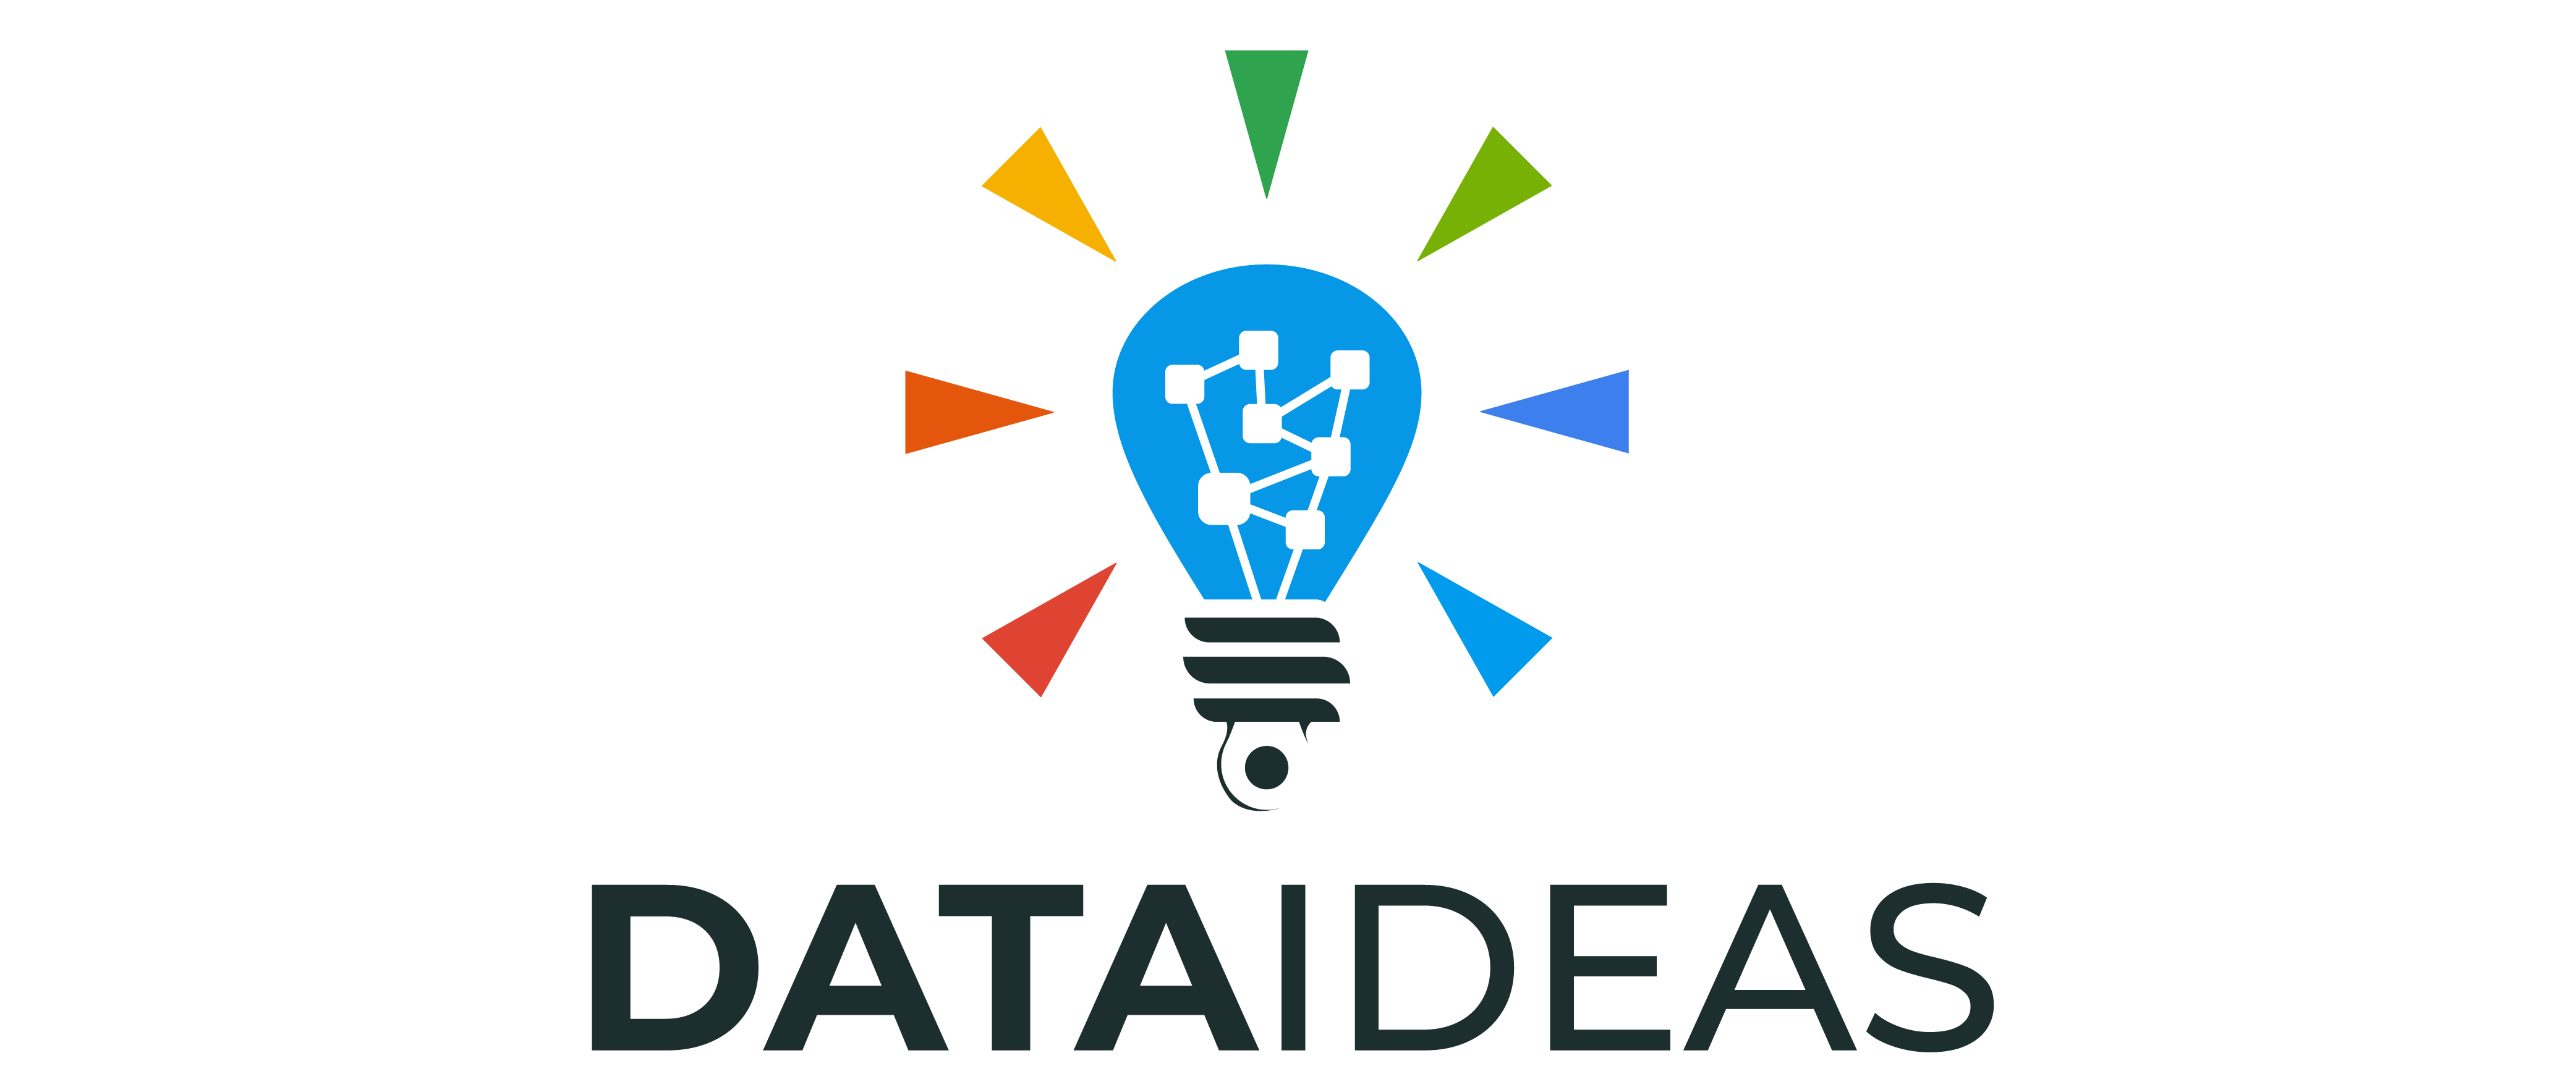 Data Ideas